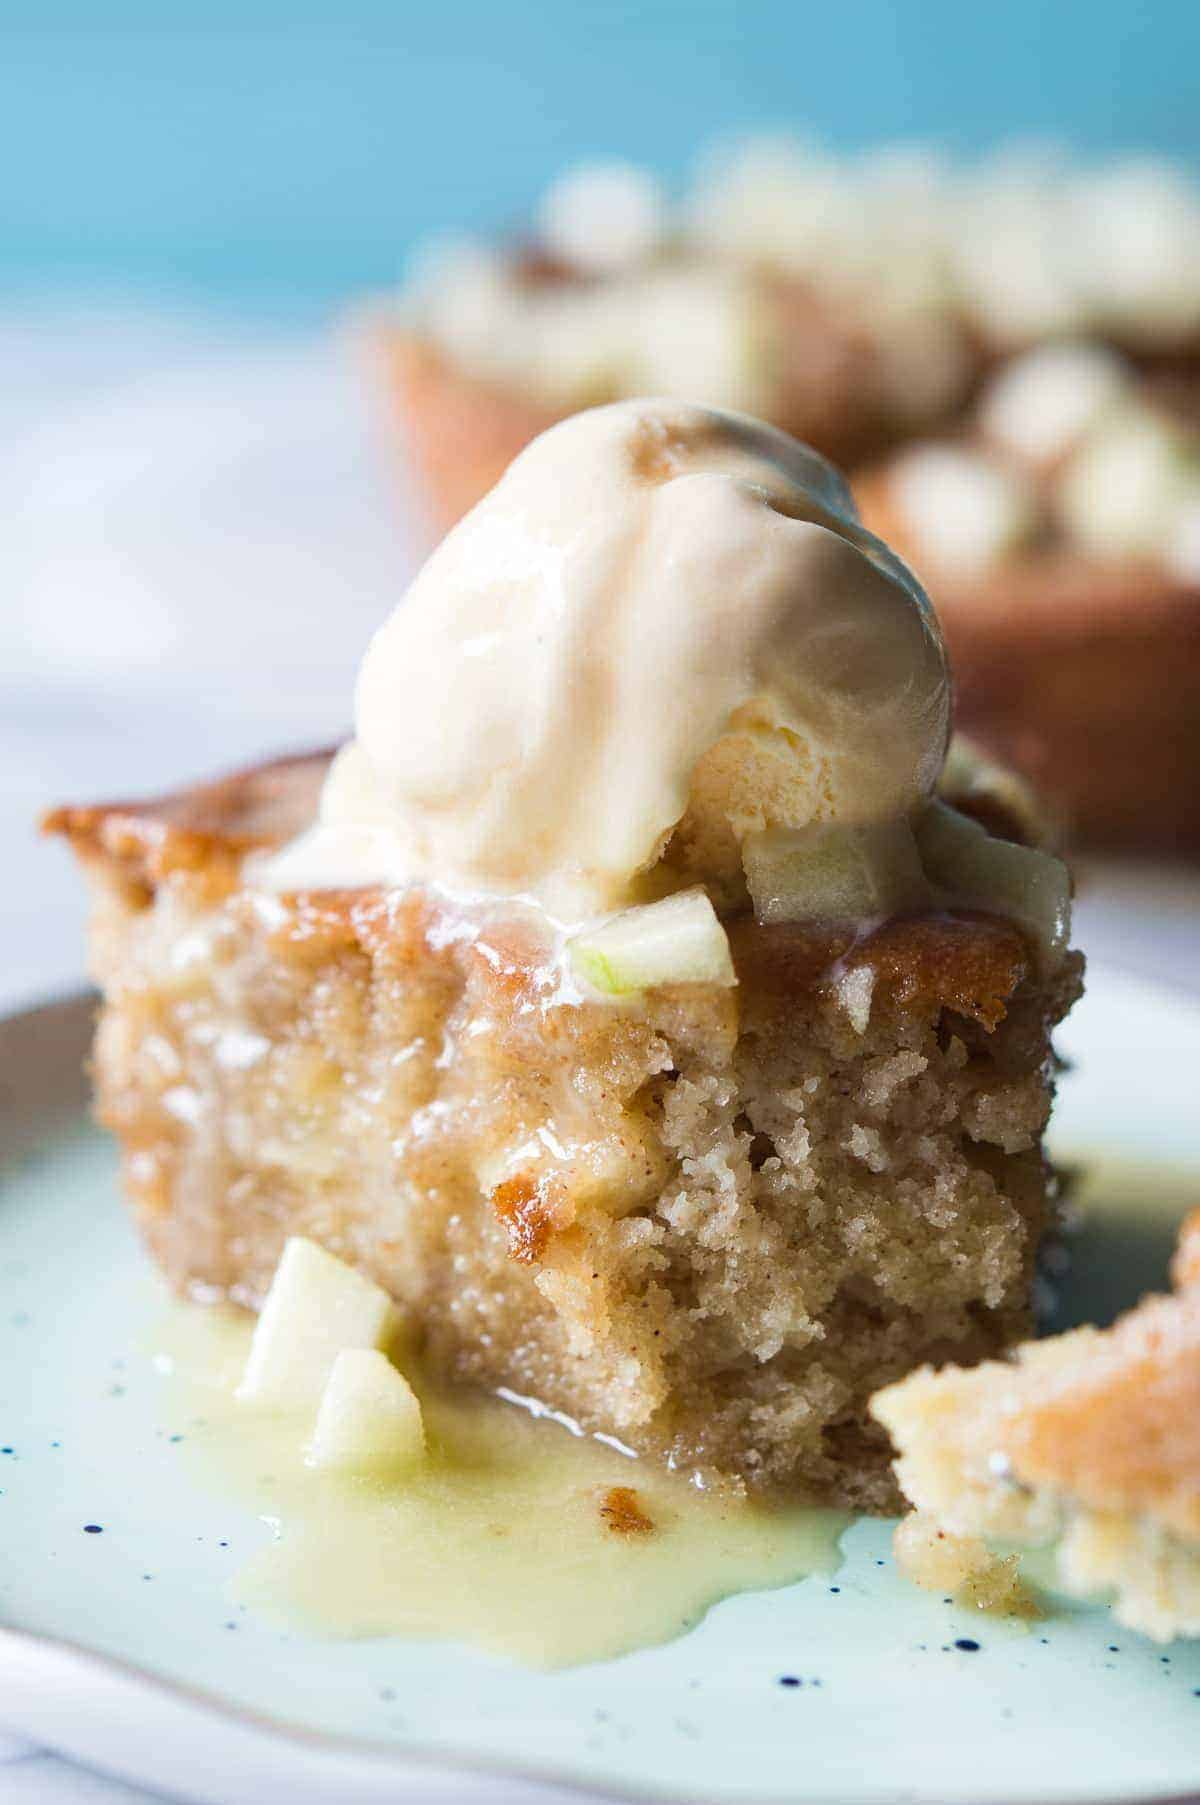 O bolo de maçã Caramelo Skillet está repleto de pedaços de maçã, regado com uma cobertura de caramelo caseira, e é perfeito para assar Fall baking!